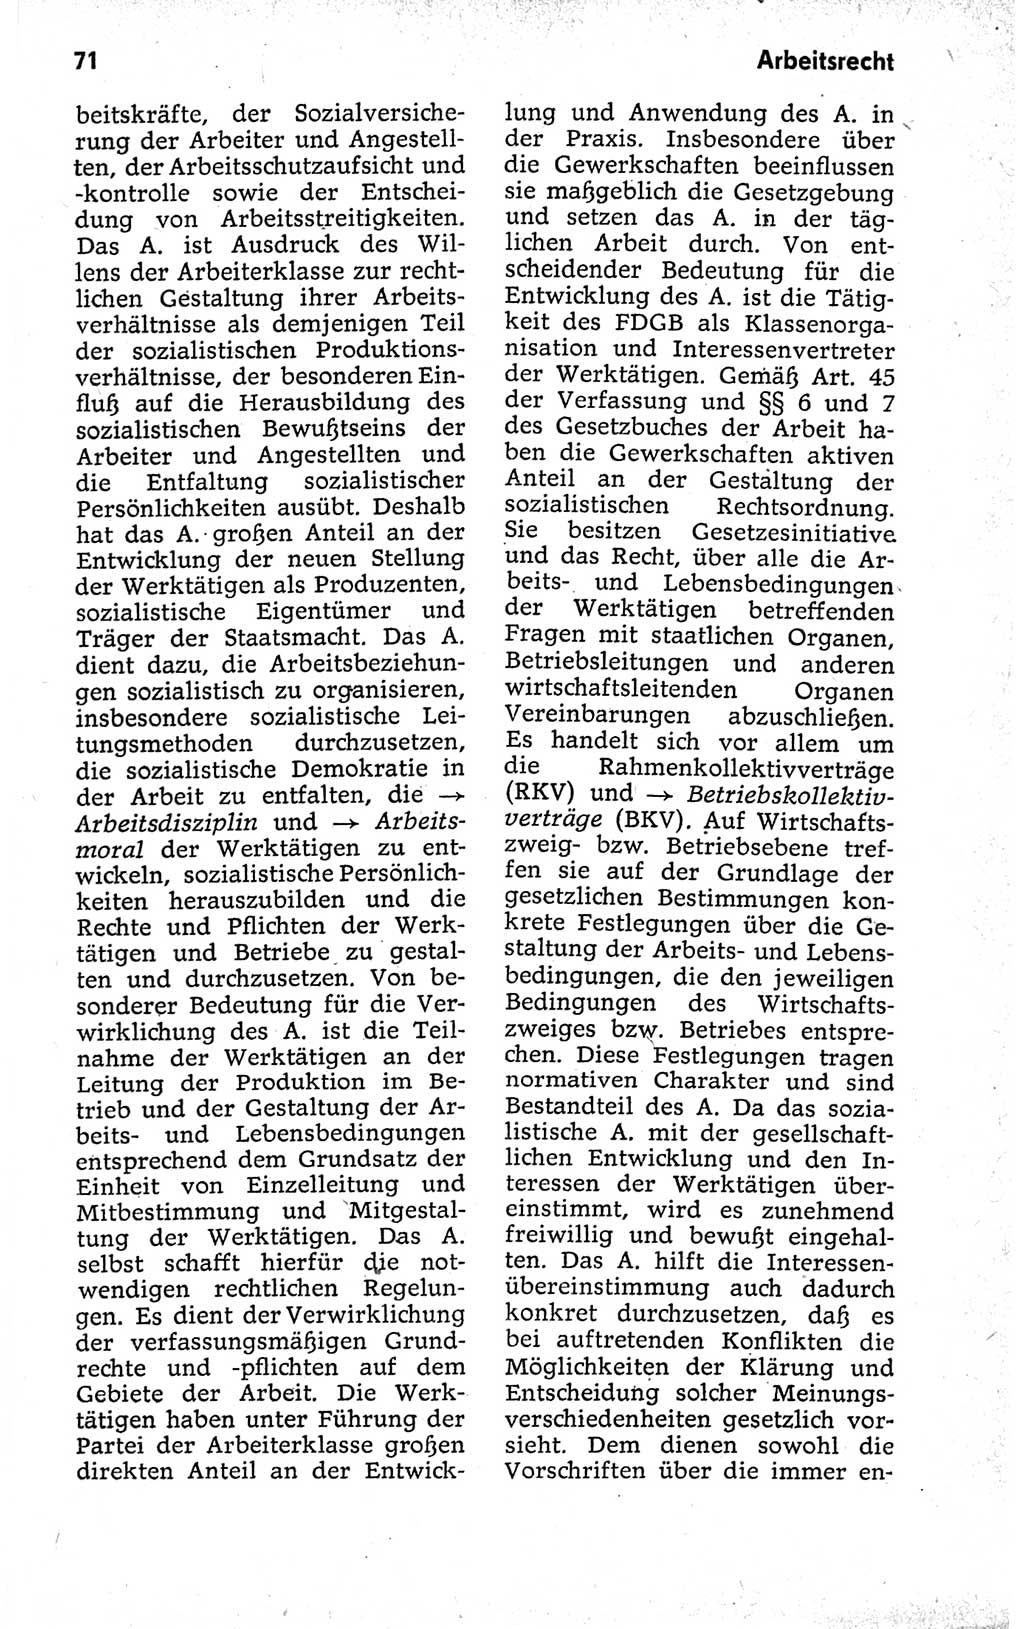 Kleines politisches Wörterbuch [Deutsche Demokratische Republik (DDR)] 1973, Seite 71 (Kl. pol. Wb. DDR 1973, S. 71)